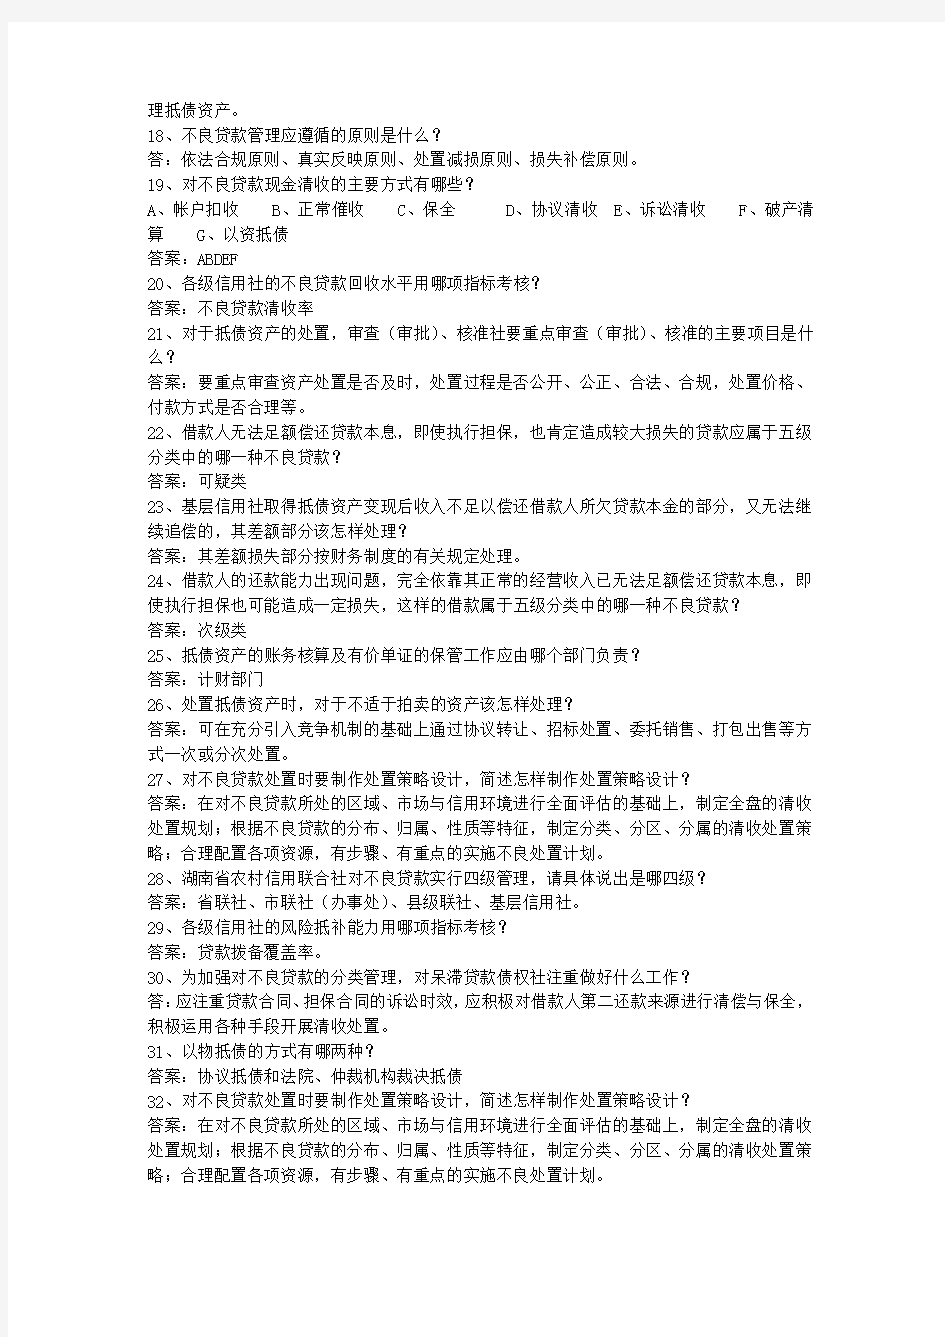 2013台湾省村信用社校园招聘考试答题技巧